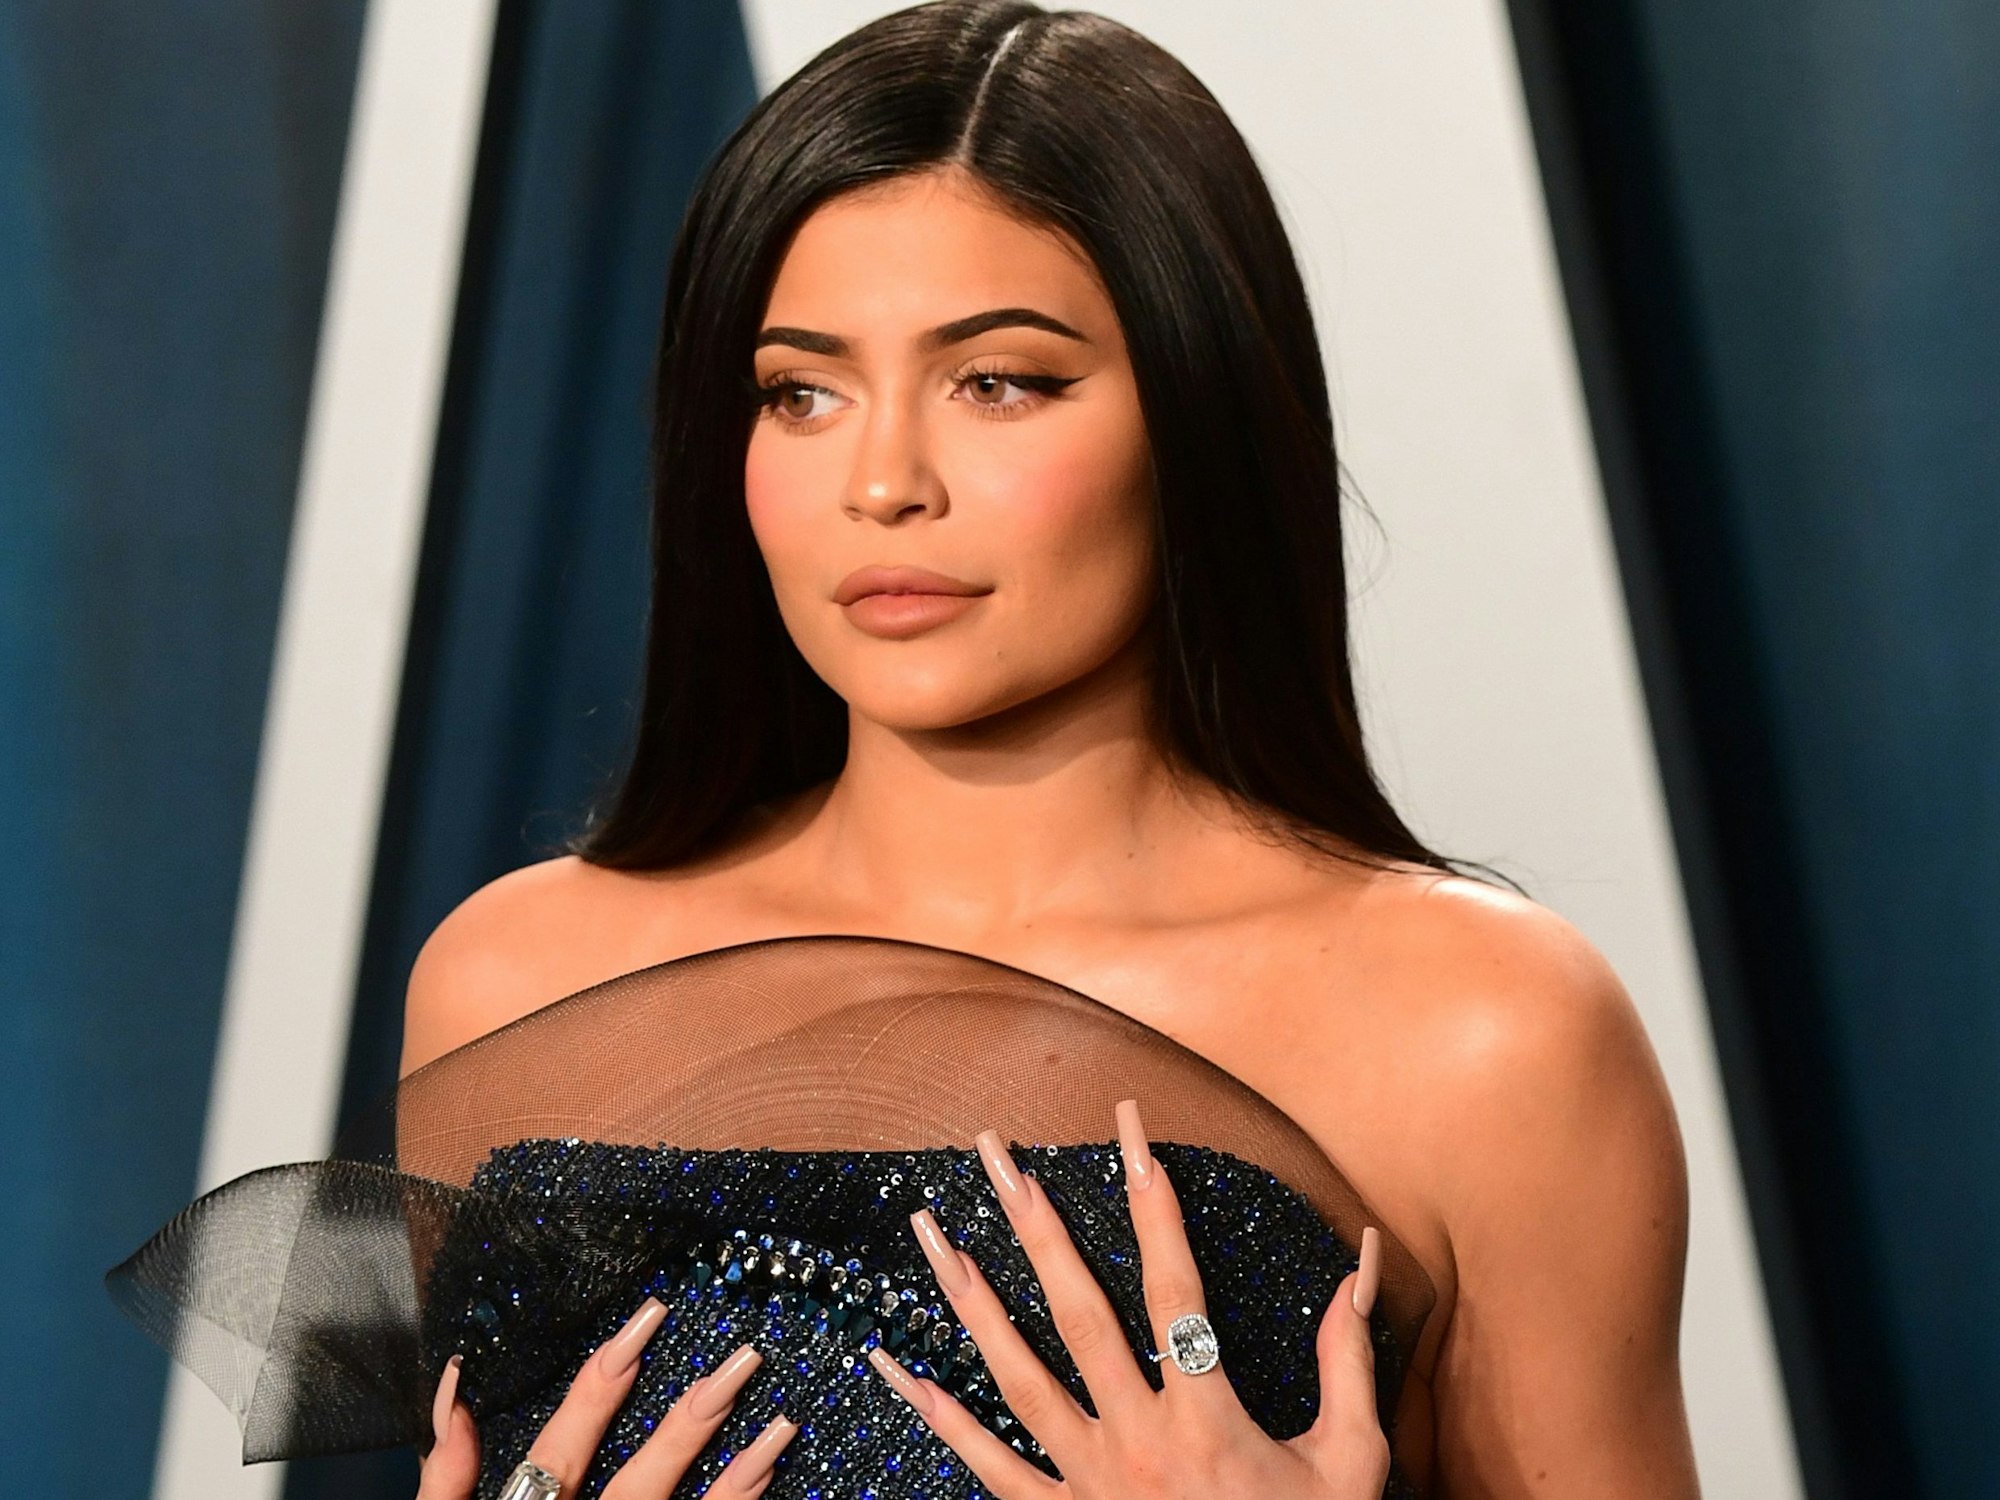 Kylie Jenner steht mit einem leichten Schmunzeln auf den Lippen vor einer blauen Wand. Die Hände hat sie auf ihre Brüste gelegt.